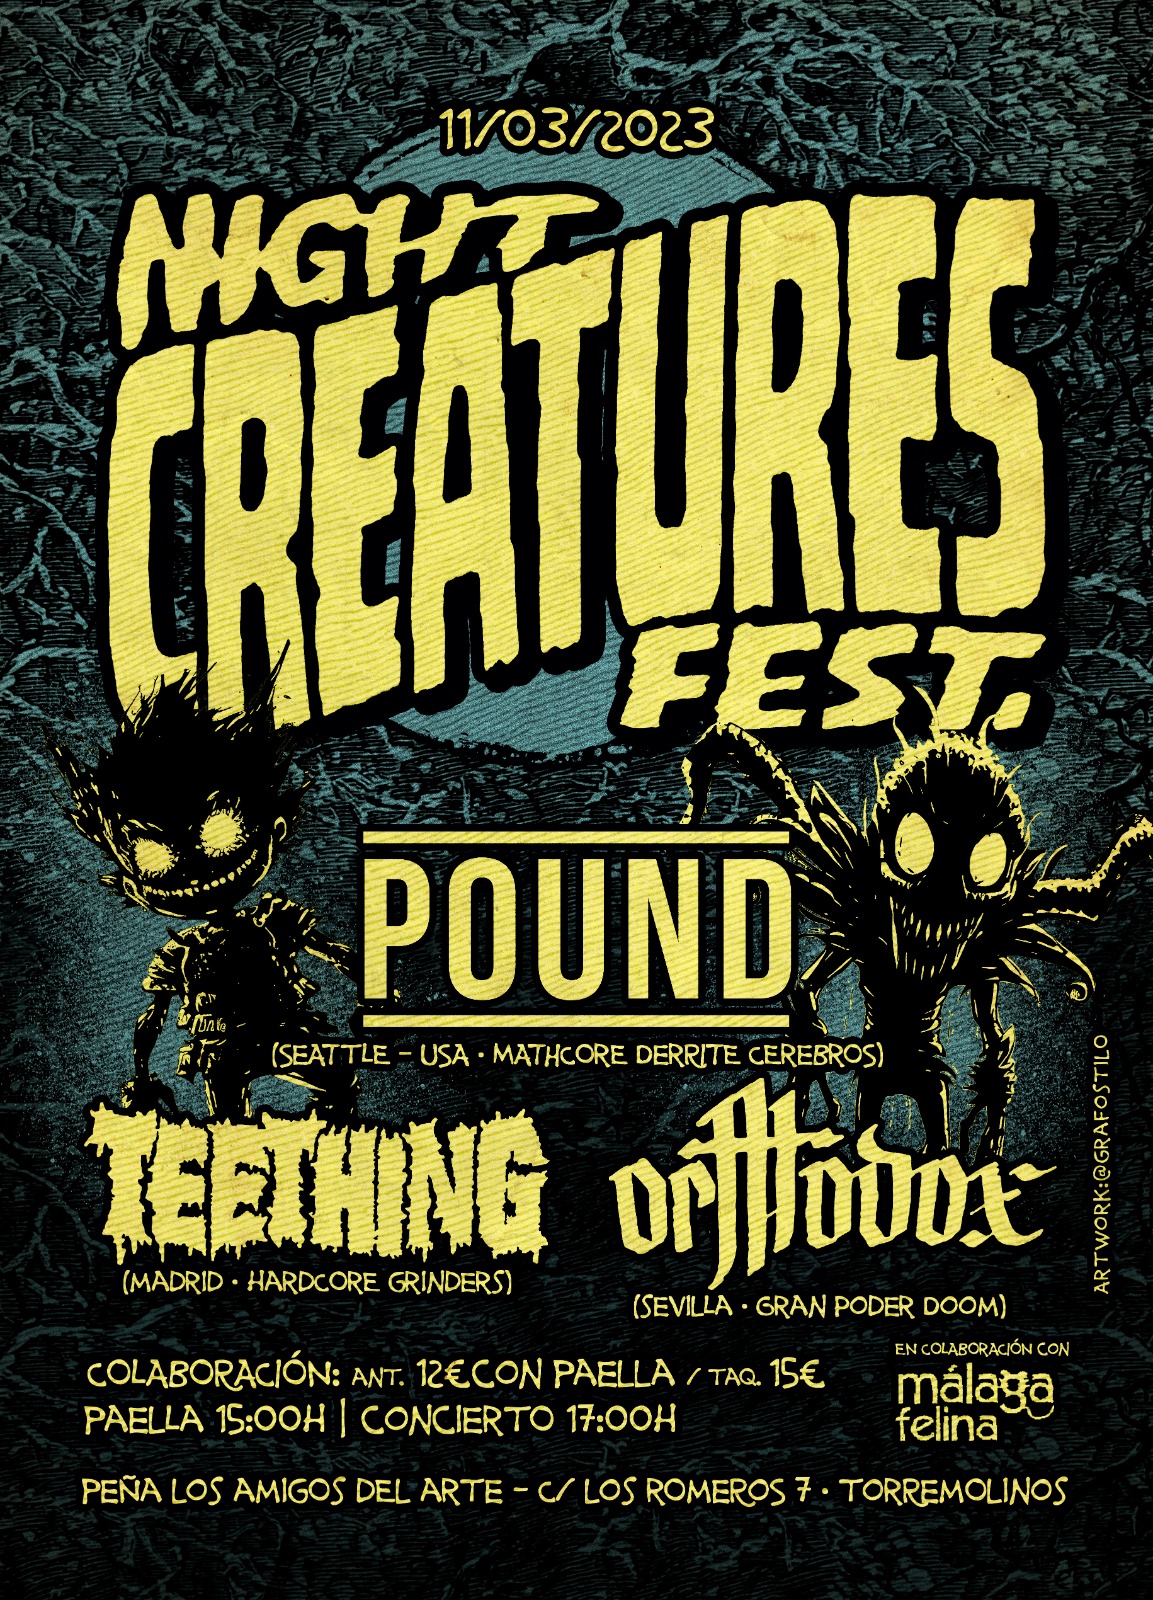 Night Creatures Fest: Este sábado en Torremolinos con Pound – Orthodox y Teething